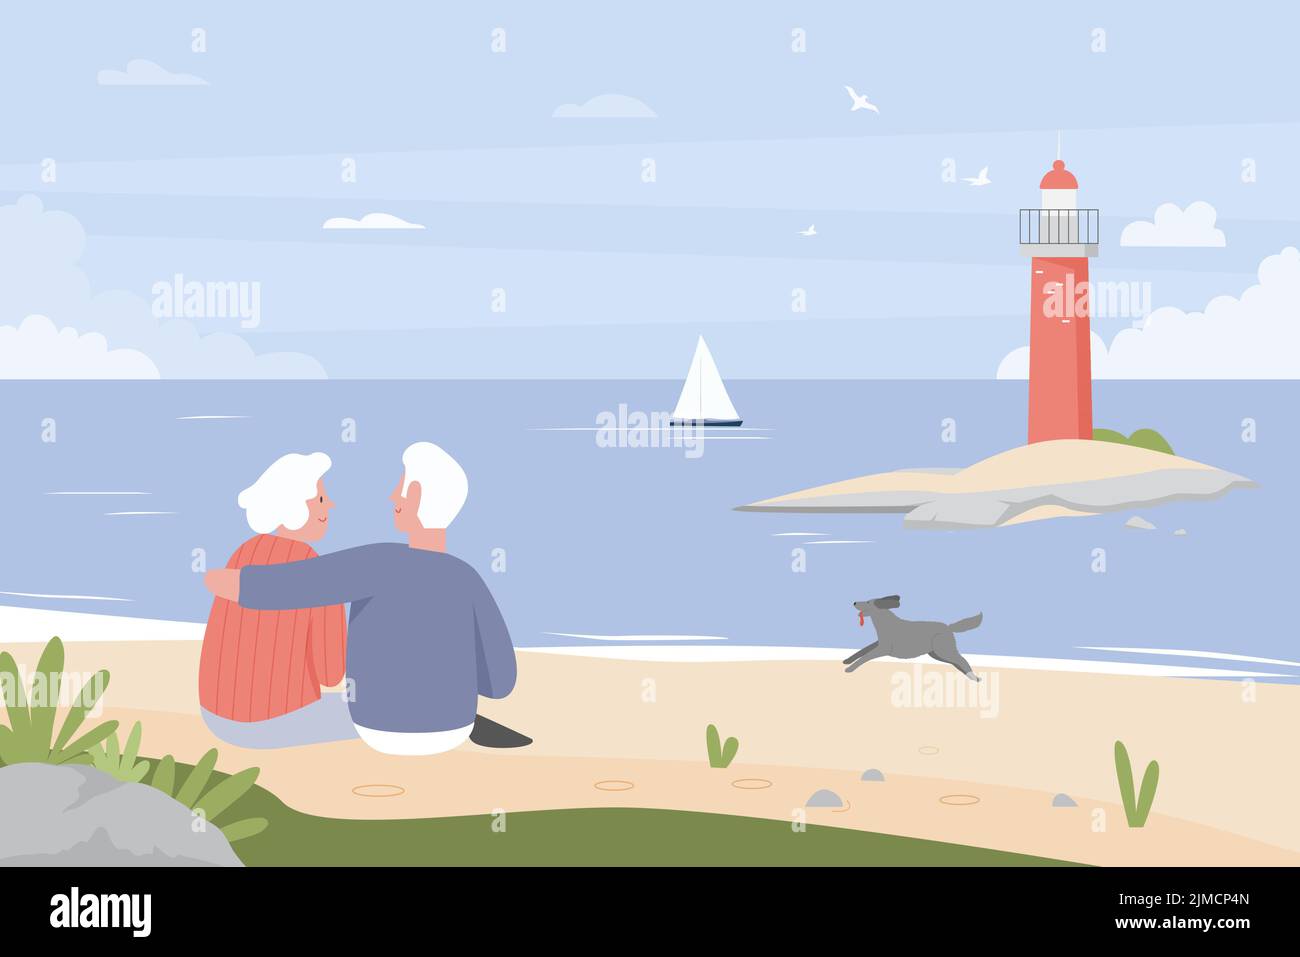 Glückliches älteres Paar, das am Strand mit Leuchtturm sitzt und umarmt. Rentner auf romantischen Sommerurlaub, ältere Frau und Mann entspannen flache Vektor-Illustration. Familie, Reise, Romantik Konzept Stock Vektor